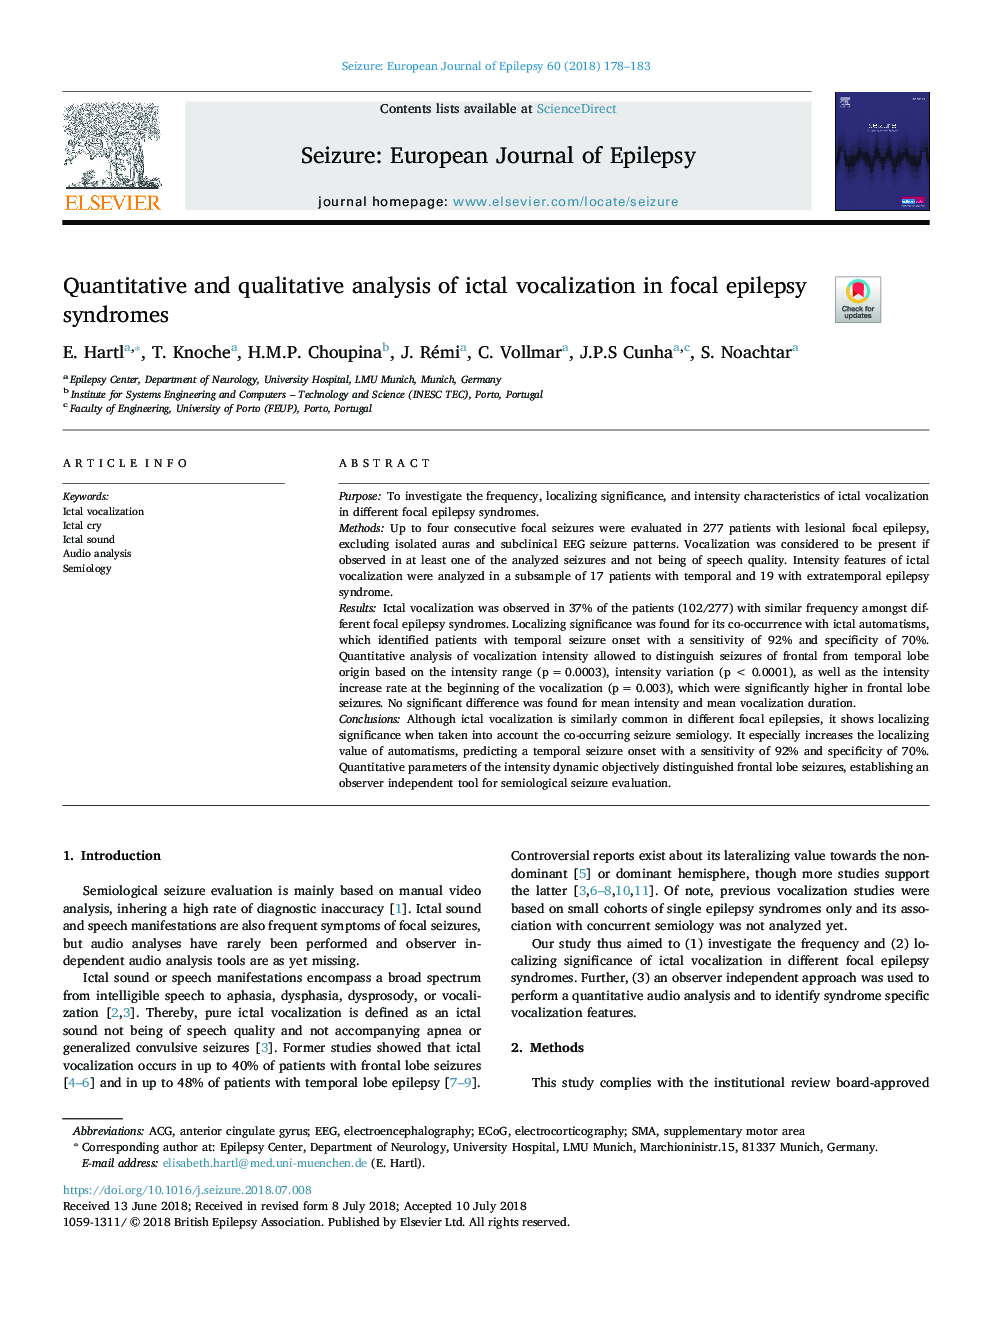 تجزیه و تحلیل کمی و کیفی آوالیزاسیون ایکالات در سندرم های صرع کانونی 